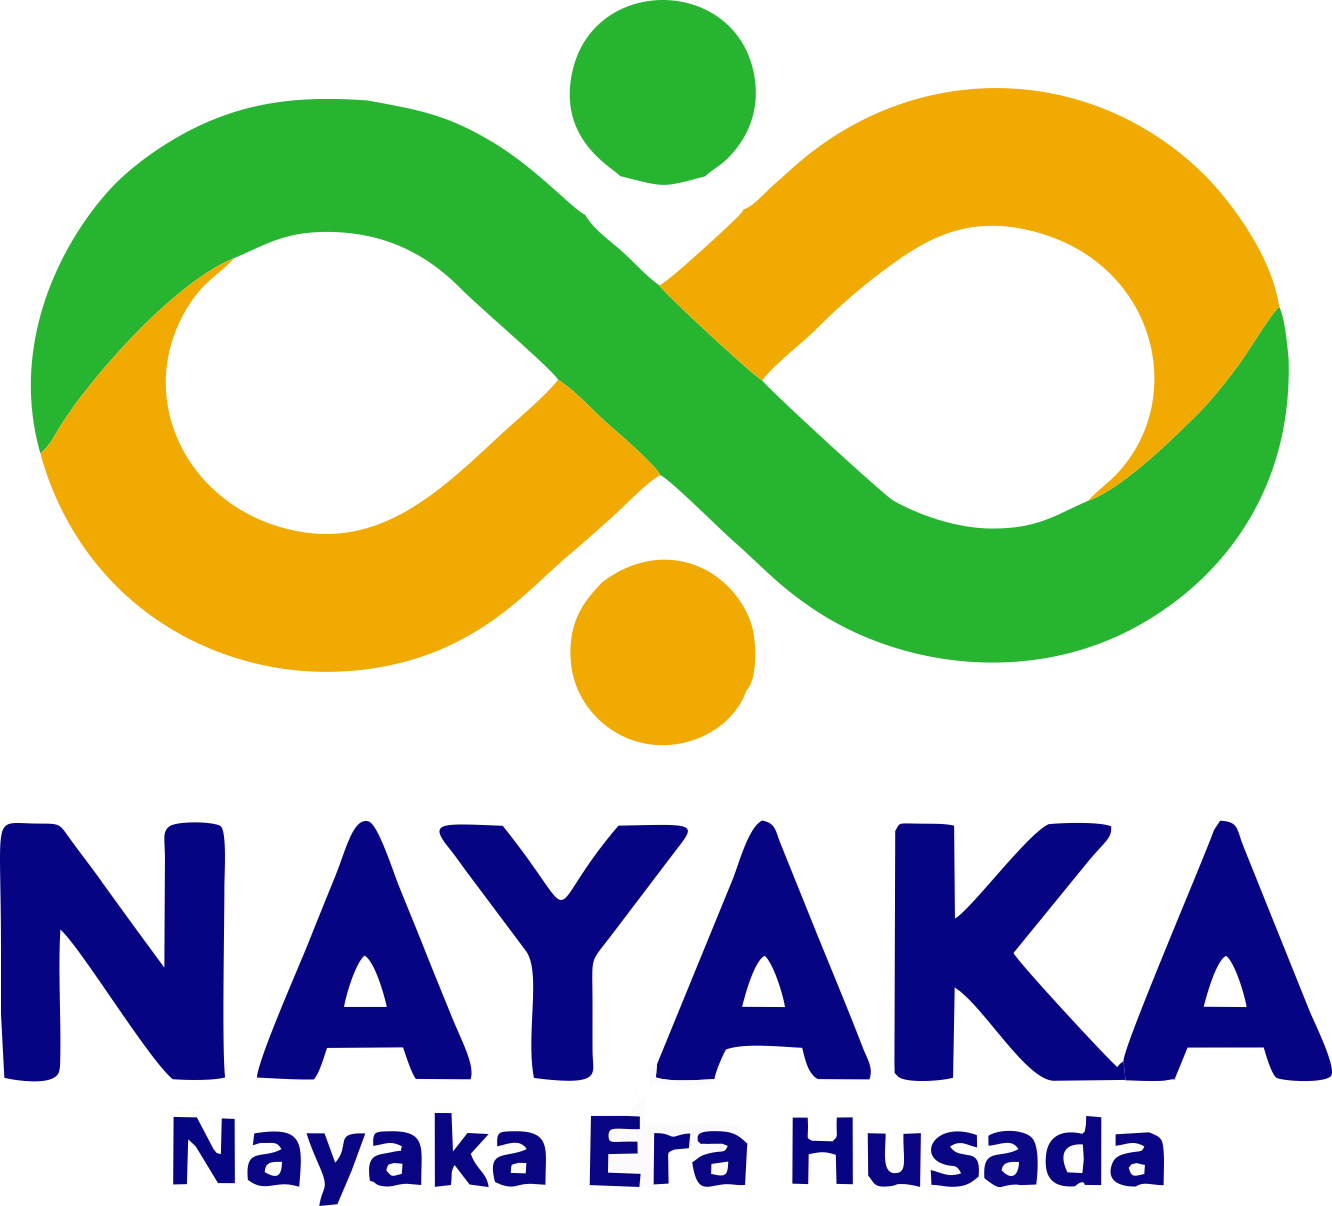 Nayaka